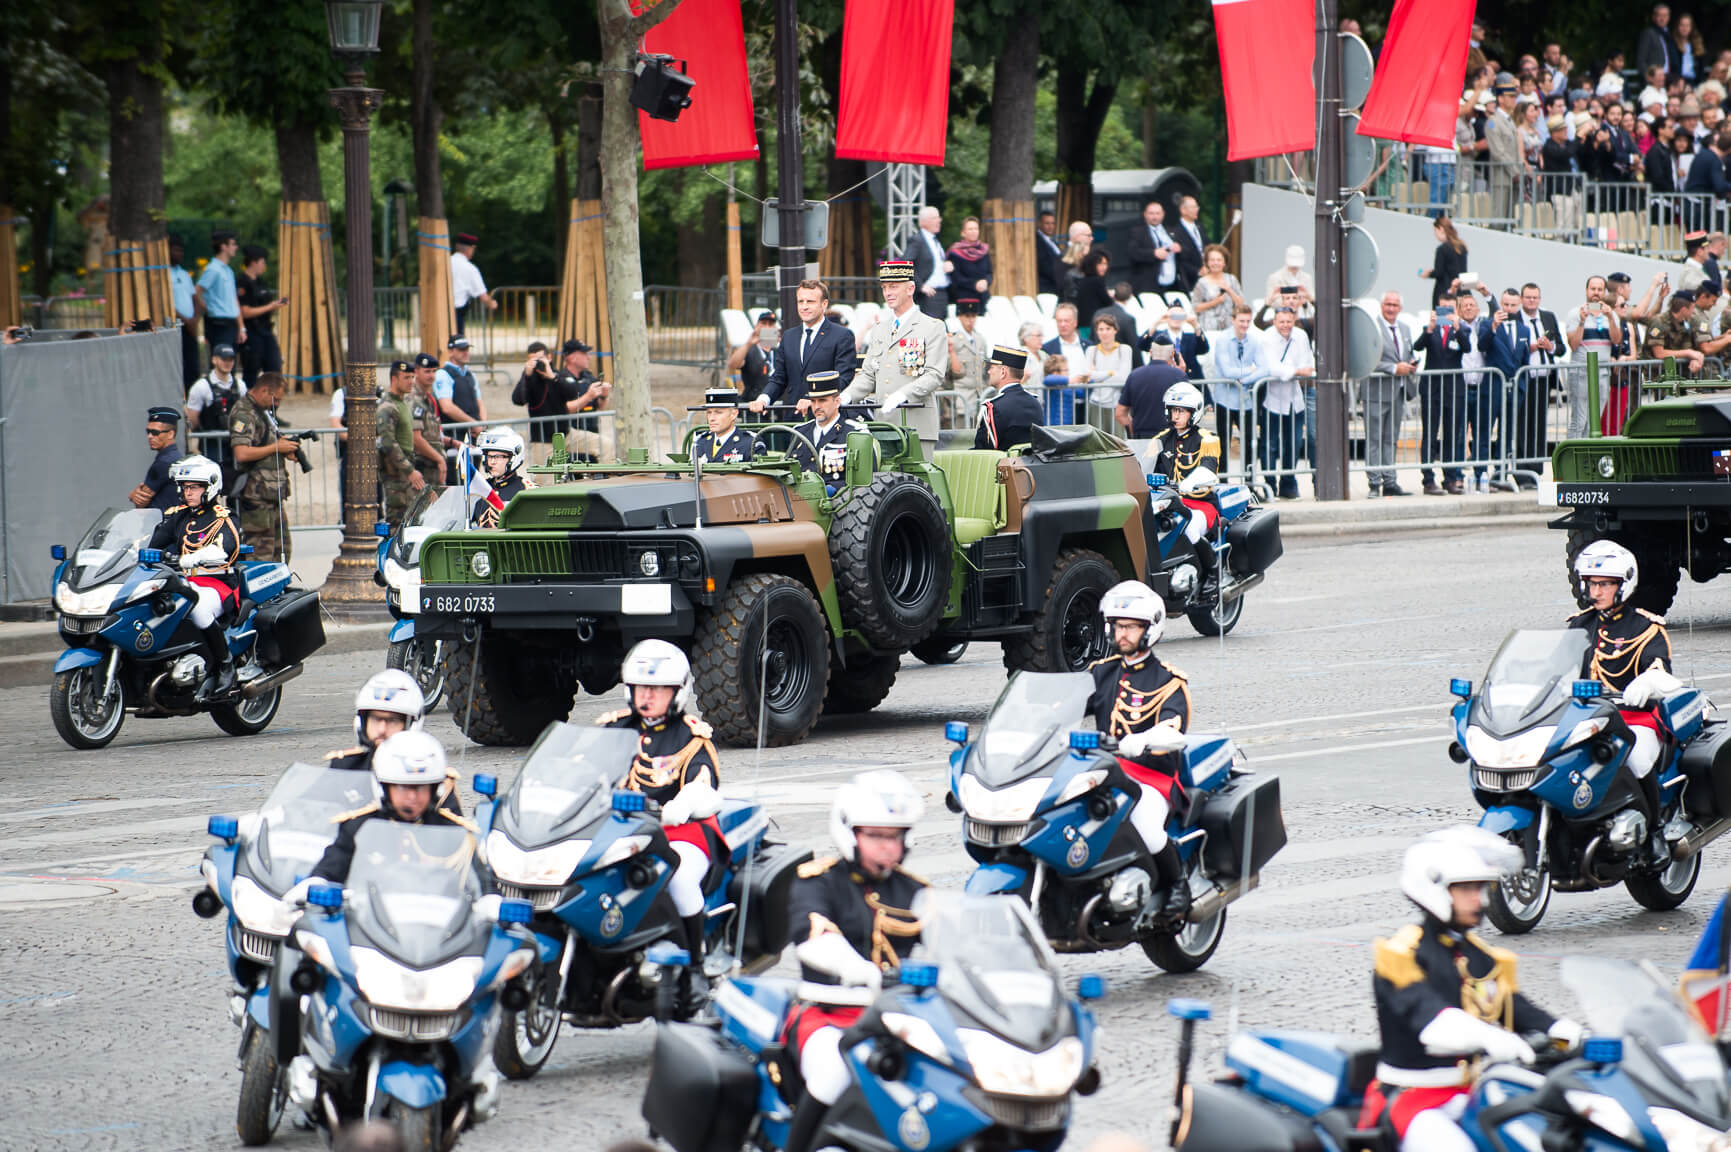 Zandee- De Franse president Emmanuel Macron in Parijs op de nationale feestdag 14 juli, in 2019. NATO